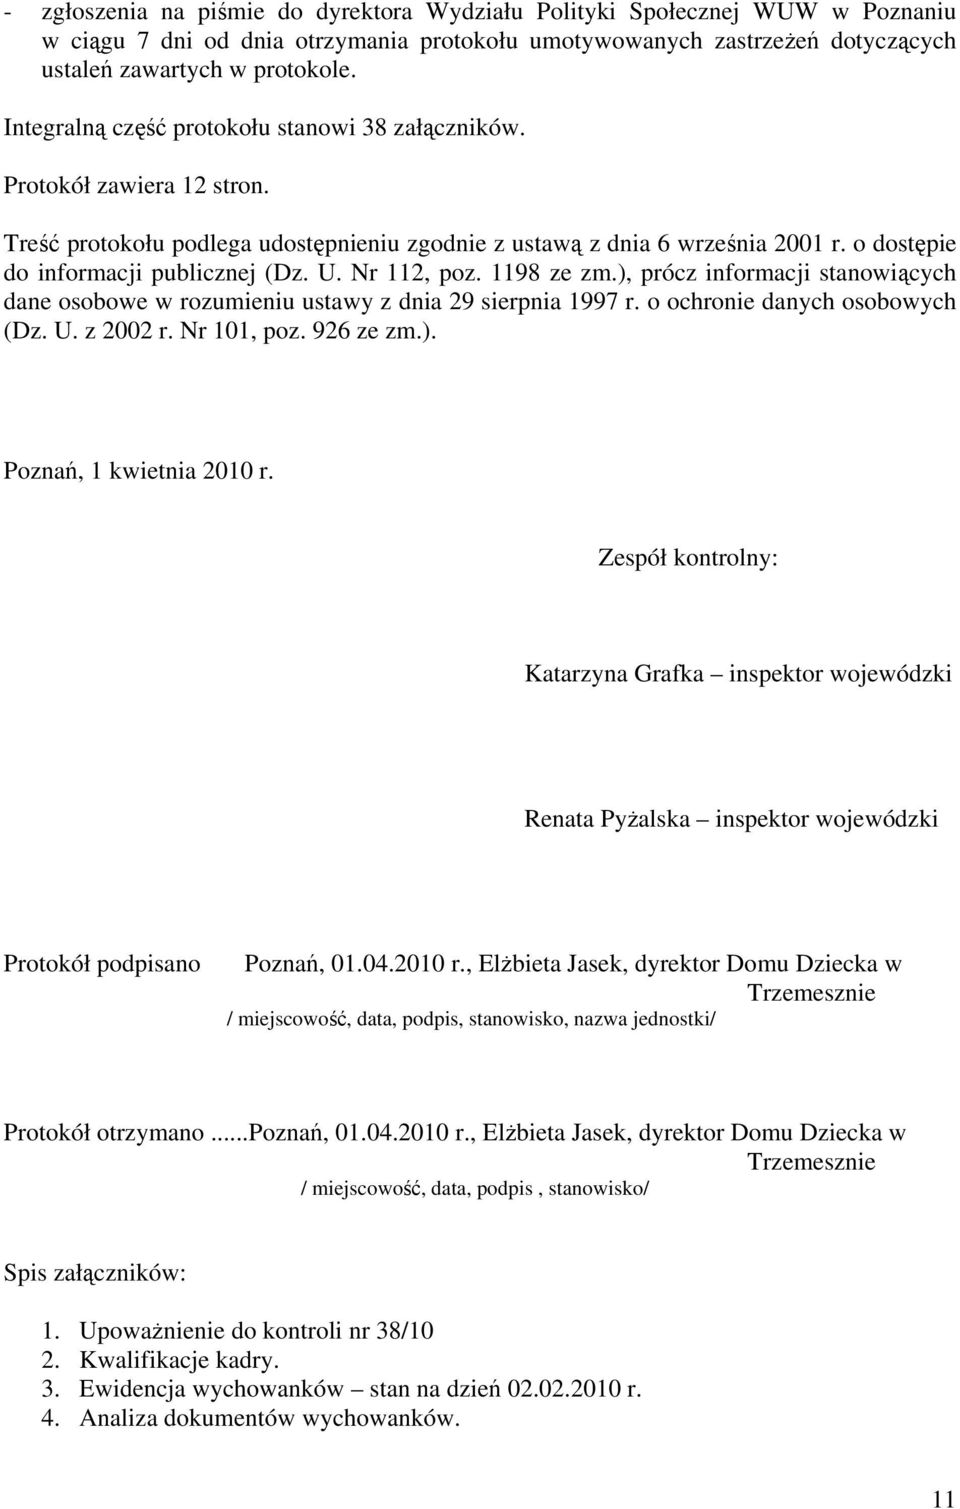 U. Nr 112, poz. 1198 ze zm.), prócz informacji stanowiących dane osobowe w rozumieniu ustawy z dnia 29 sierpnia 1997 r. o ochronie danych osobowych (Dz. U. z 2002 r. Nr 101, poz. 926 ze zm.). Poznań, 1 kwietnia 2010 r.